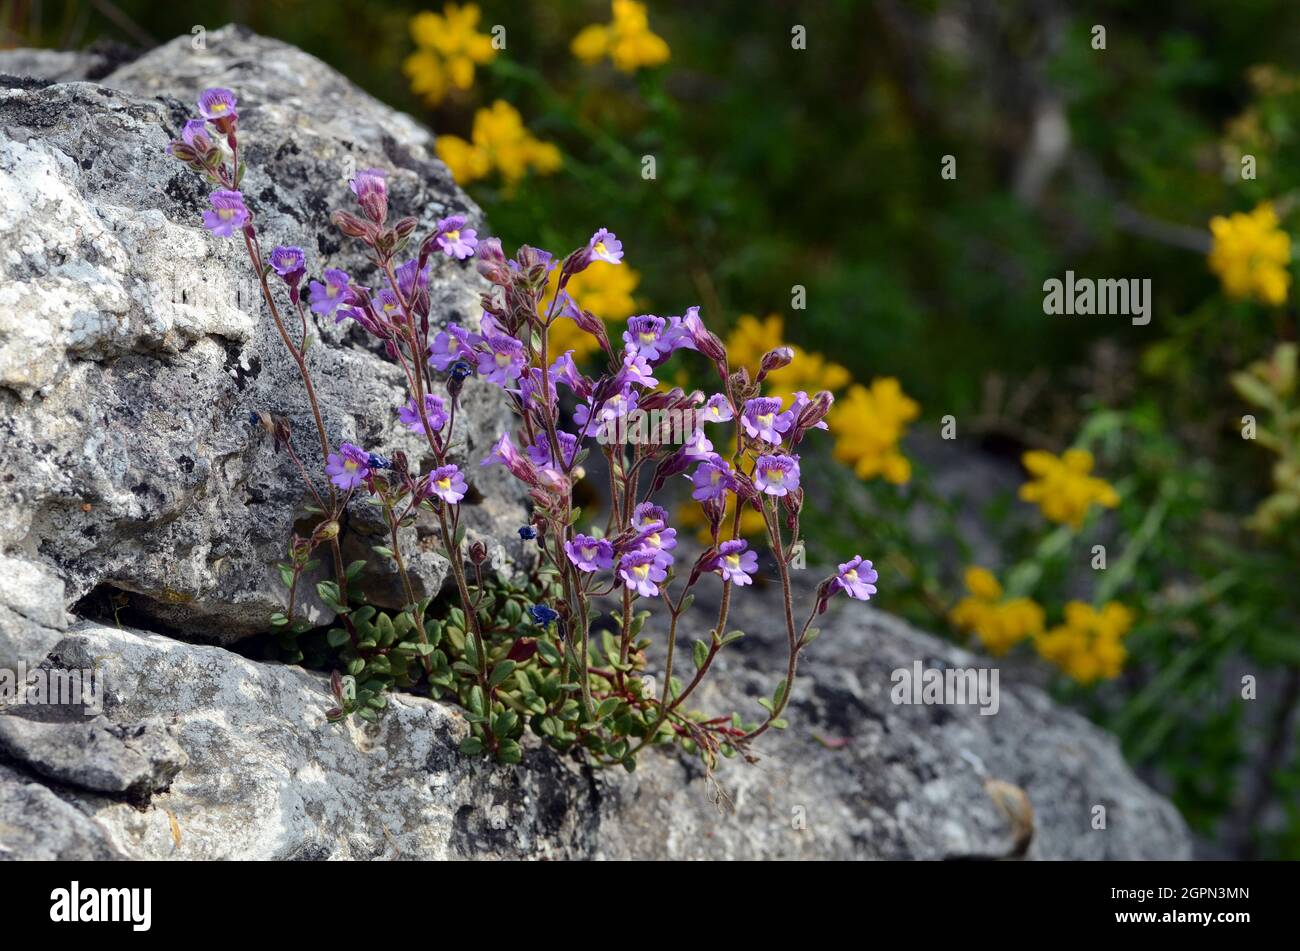 Chaenorhinum origanifolium flowers growing on rocks Stock Photo